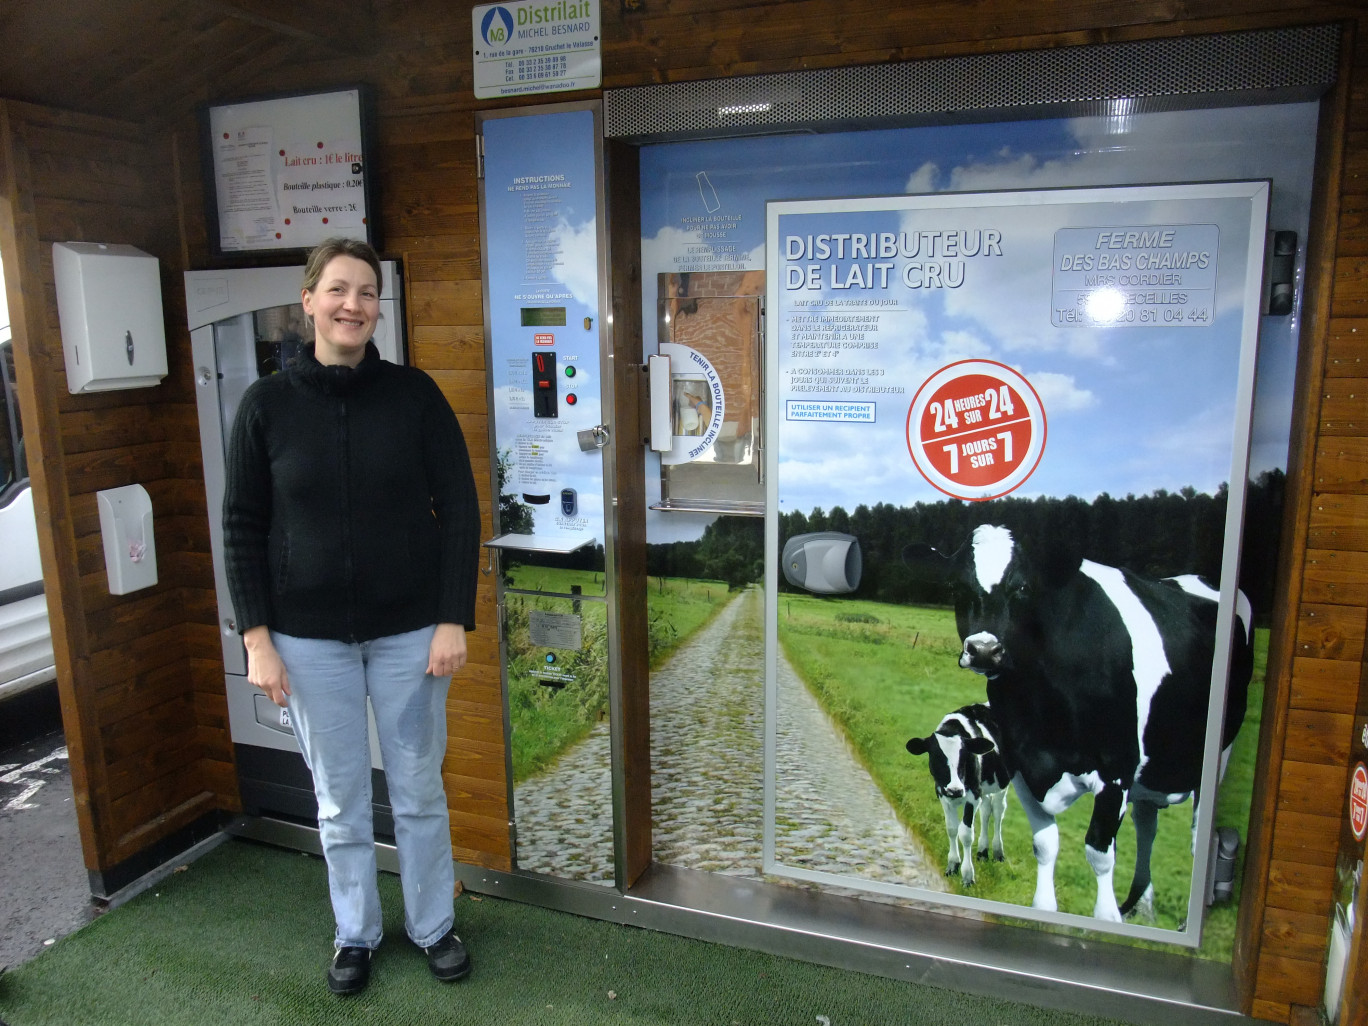 La consigne du verre existe déjà à Leclerc St Amand-les-Eaux pour un distributeur de lait fermier, avec succès!